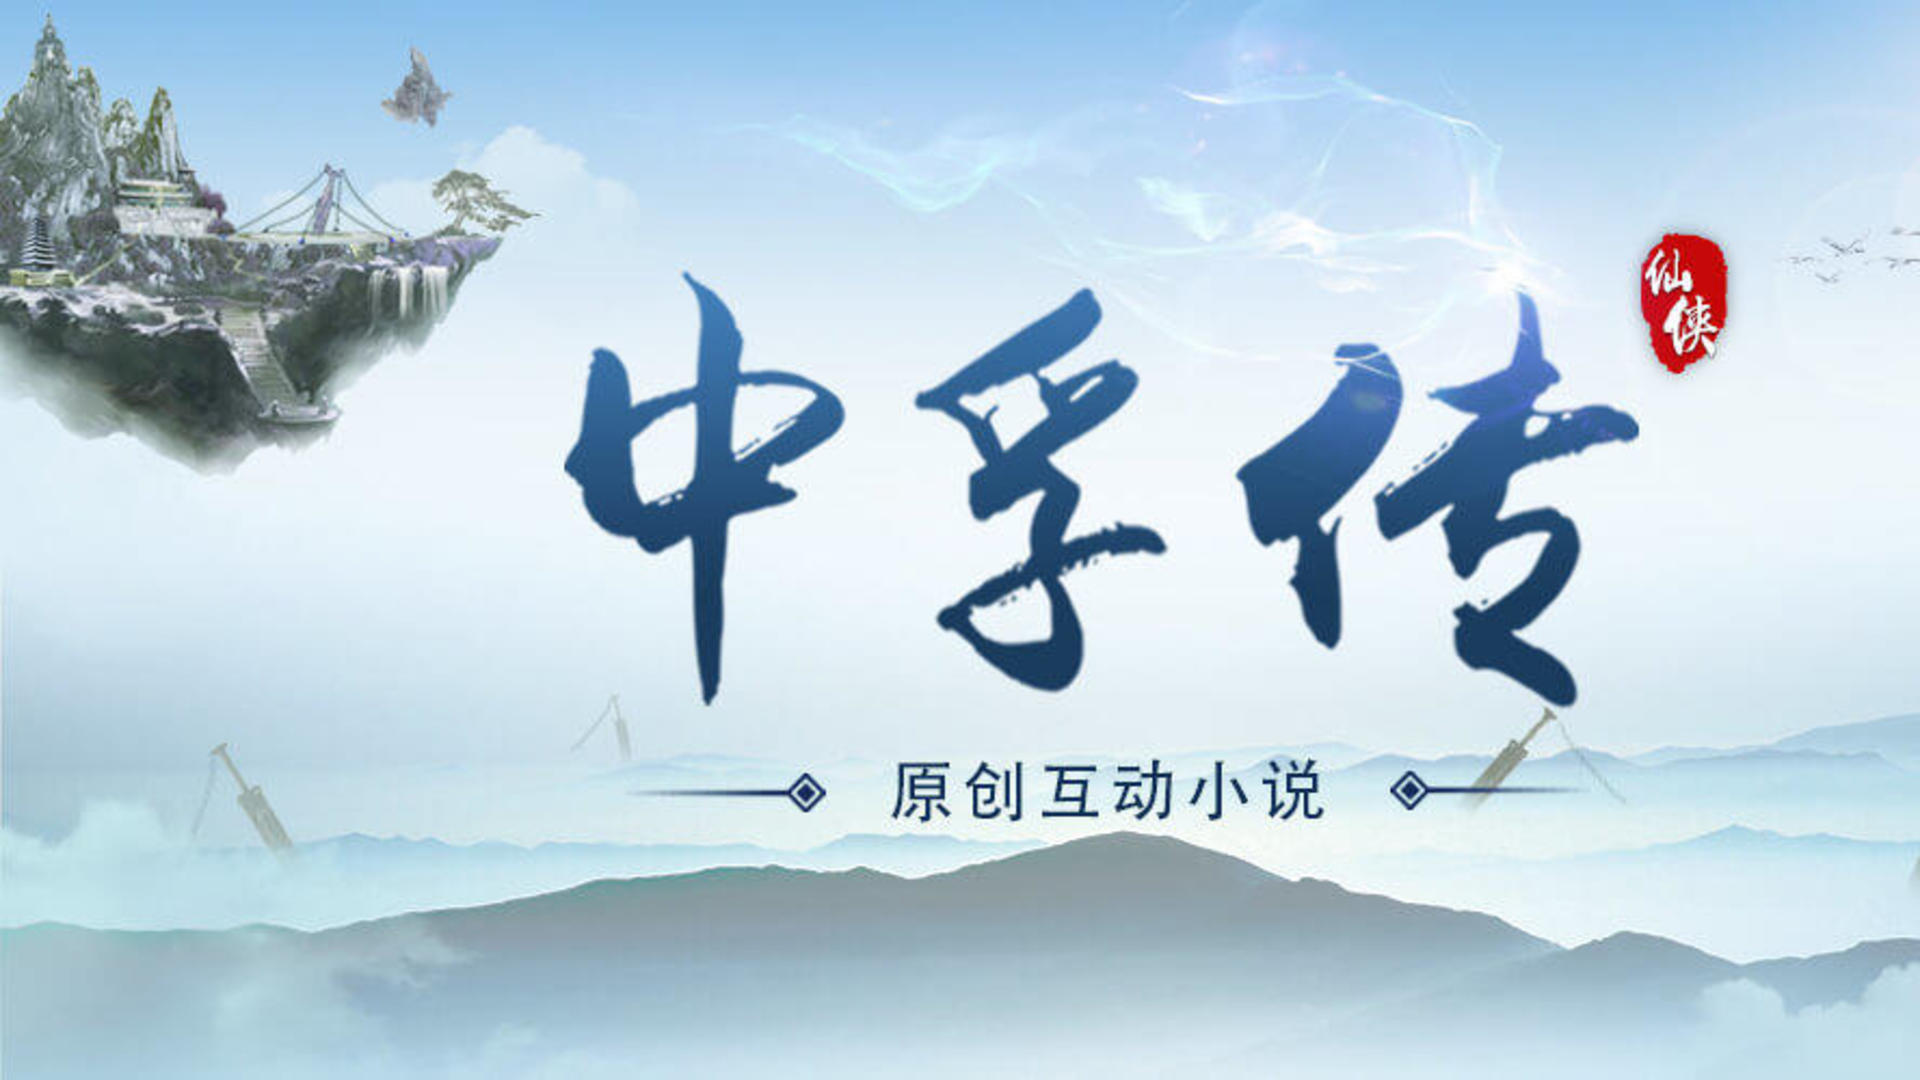 Banner of Biografi Zhongfu 